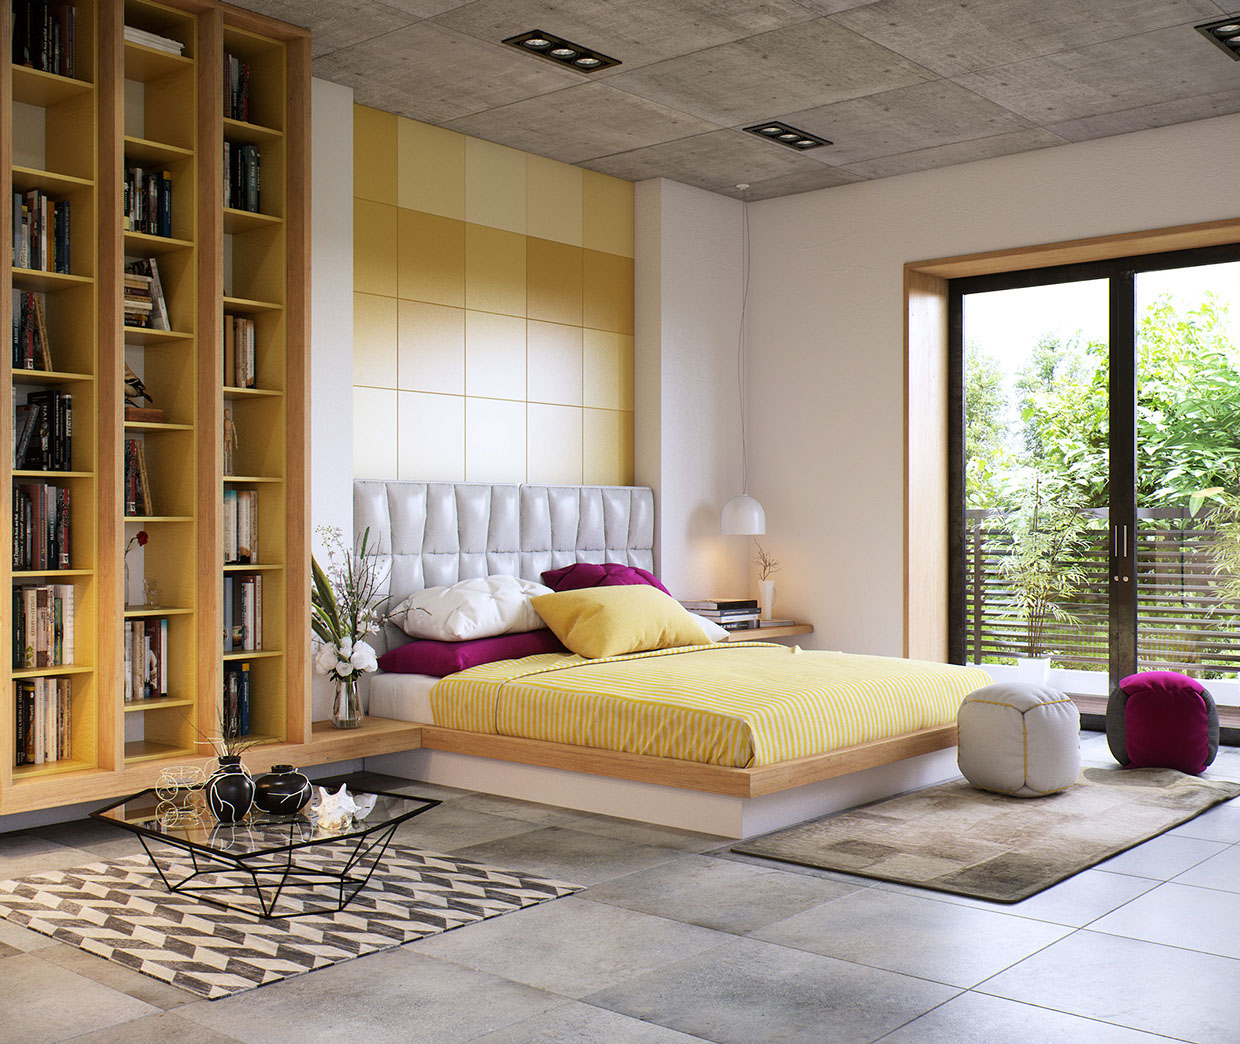 Wedo thiết kế nội thất phòng ngủ sáng tạo với sắc vàng, hồng và trắng tinh tế